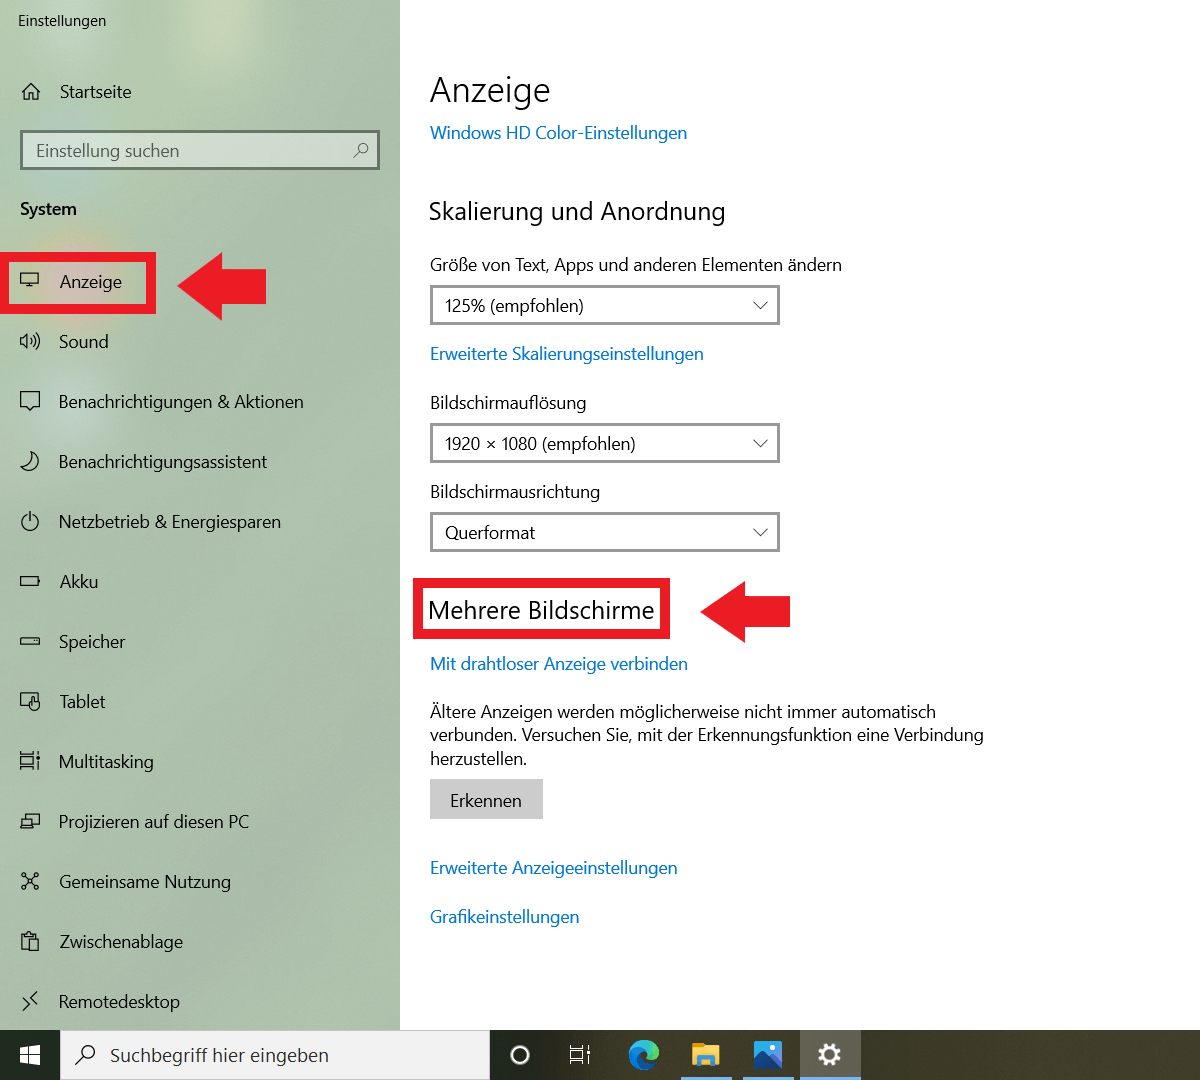 Windows 10: Einstellungen mit Menüpunkt „Anzeige“ und „Mehrere Bildschirme“